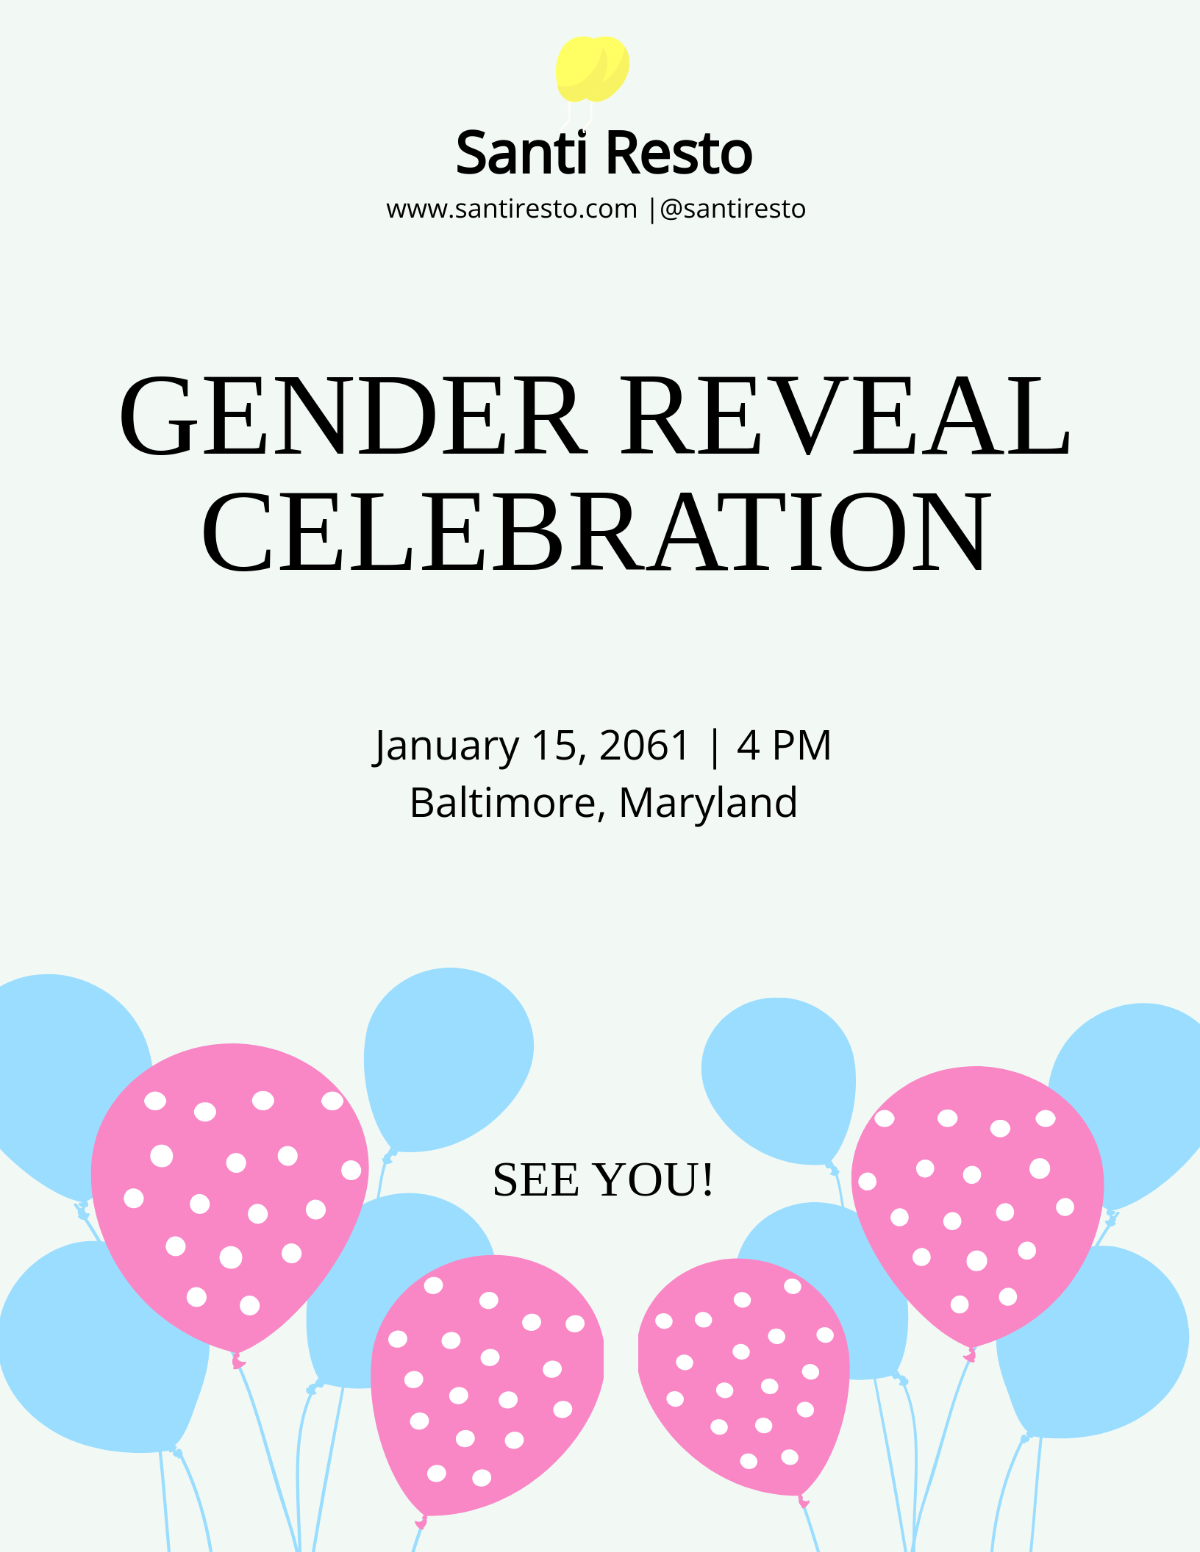 Free Gender Reveal Celebration Flyer Template